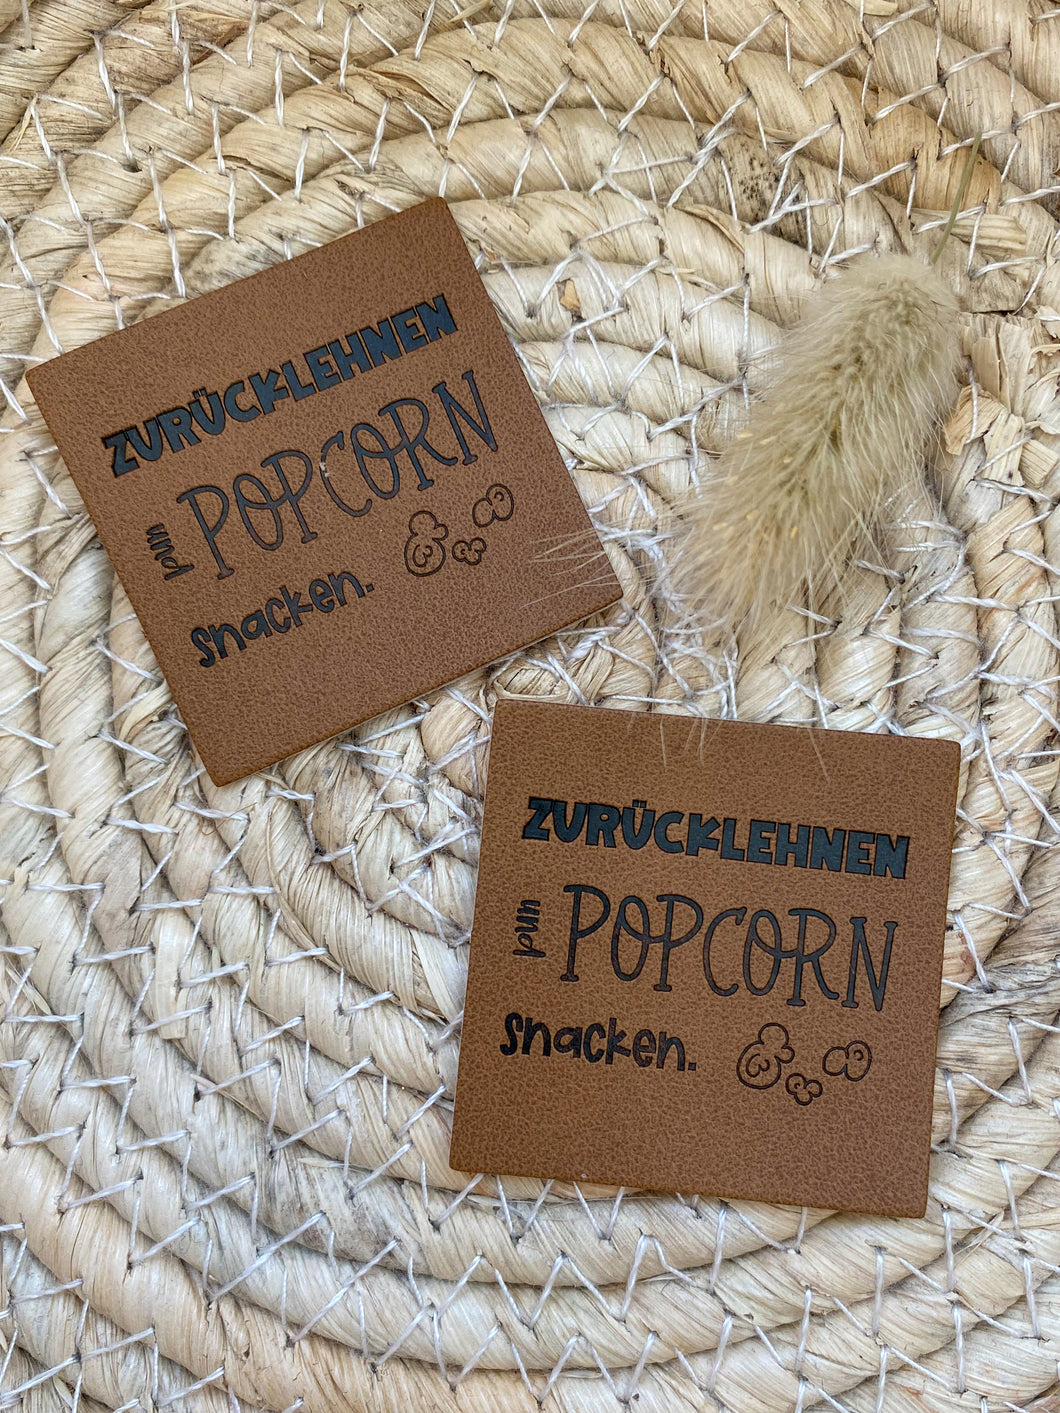 Zurücklehnen und Popcorn snacken - Kunstleder Label